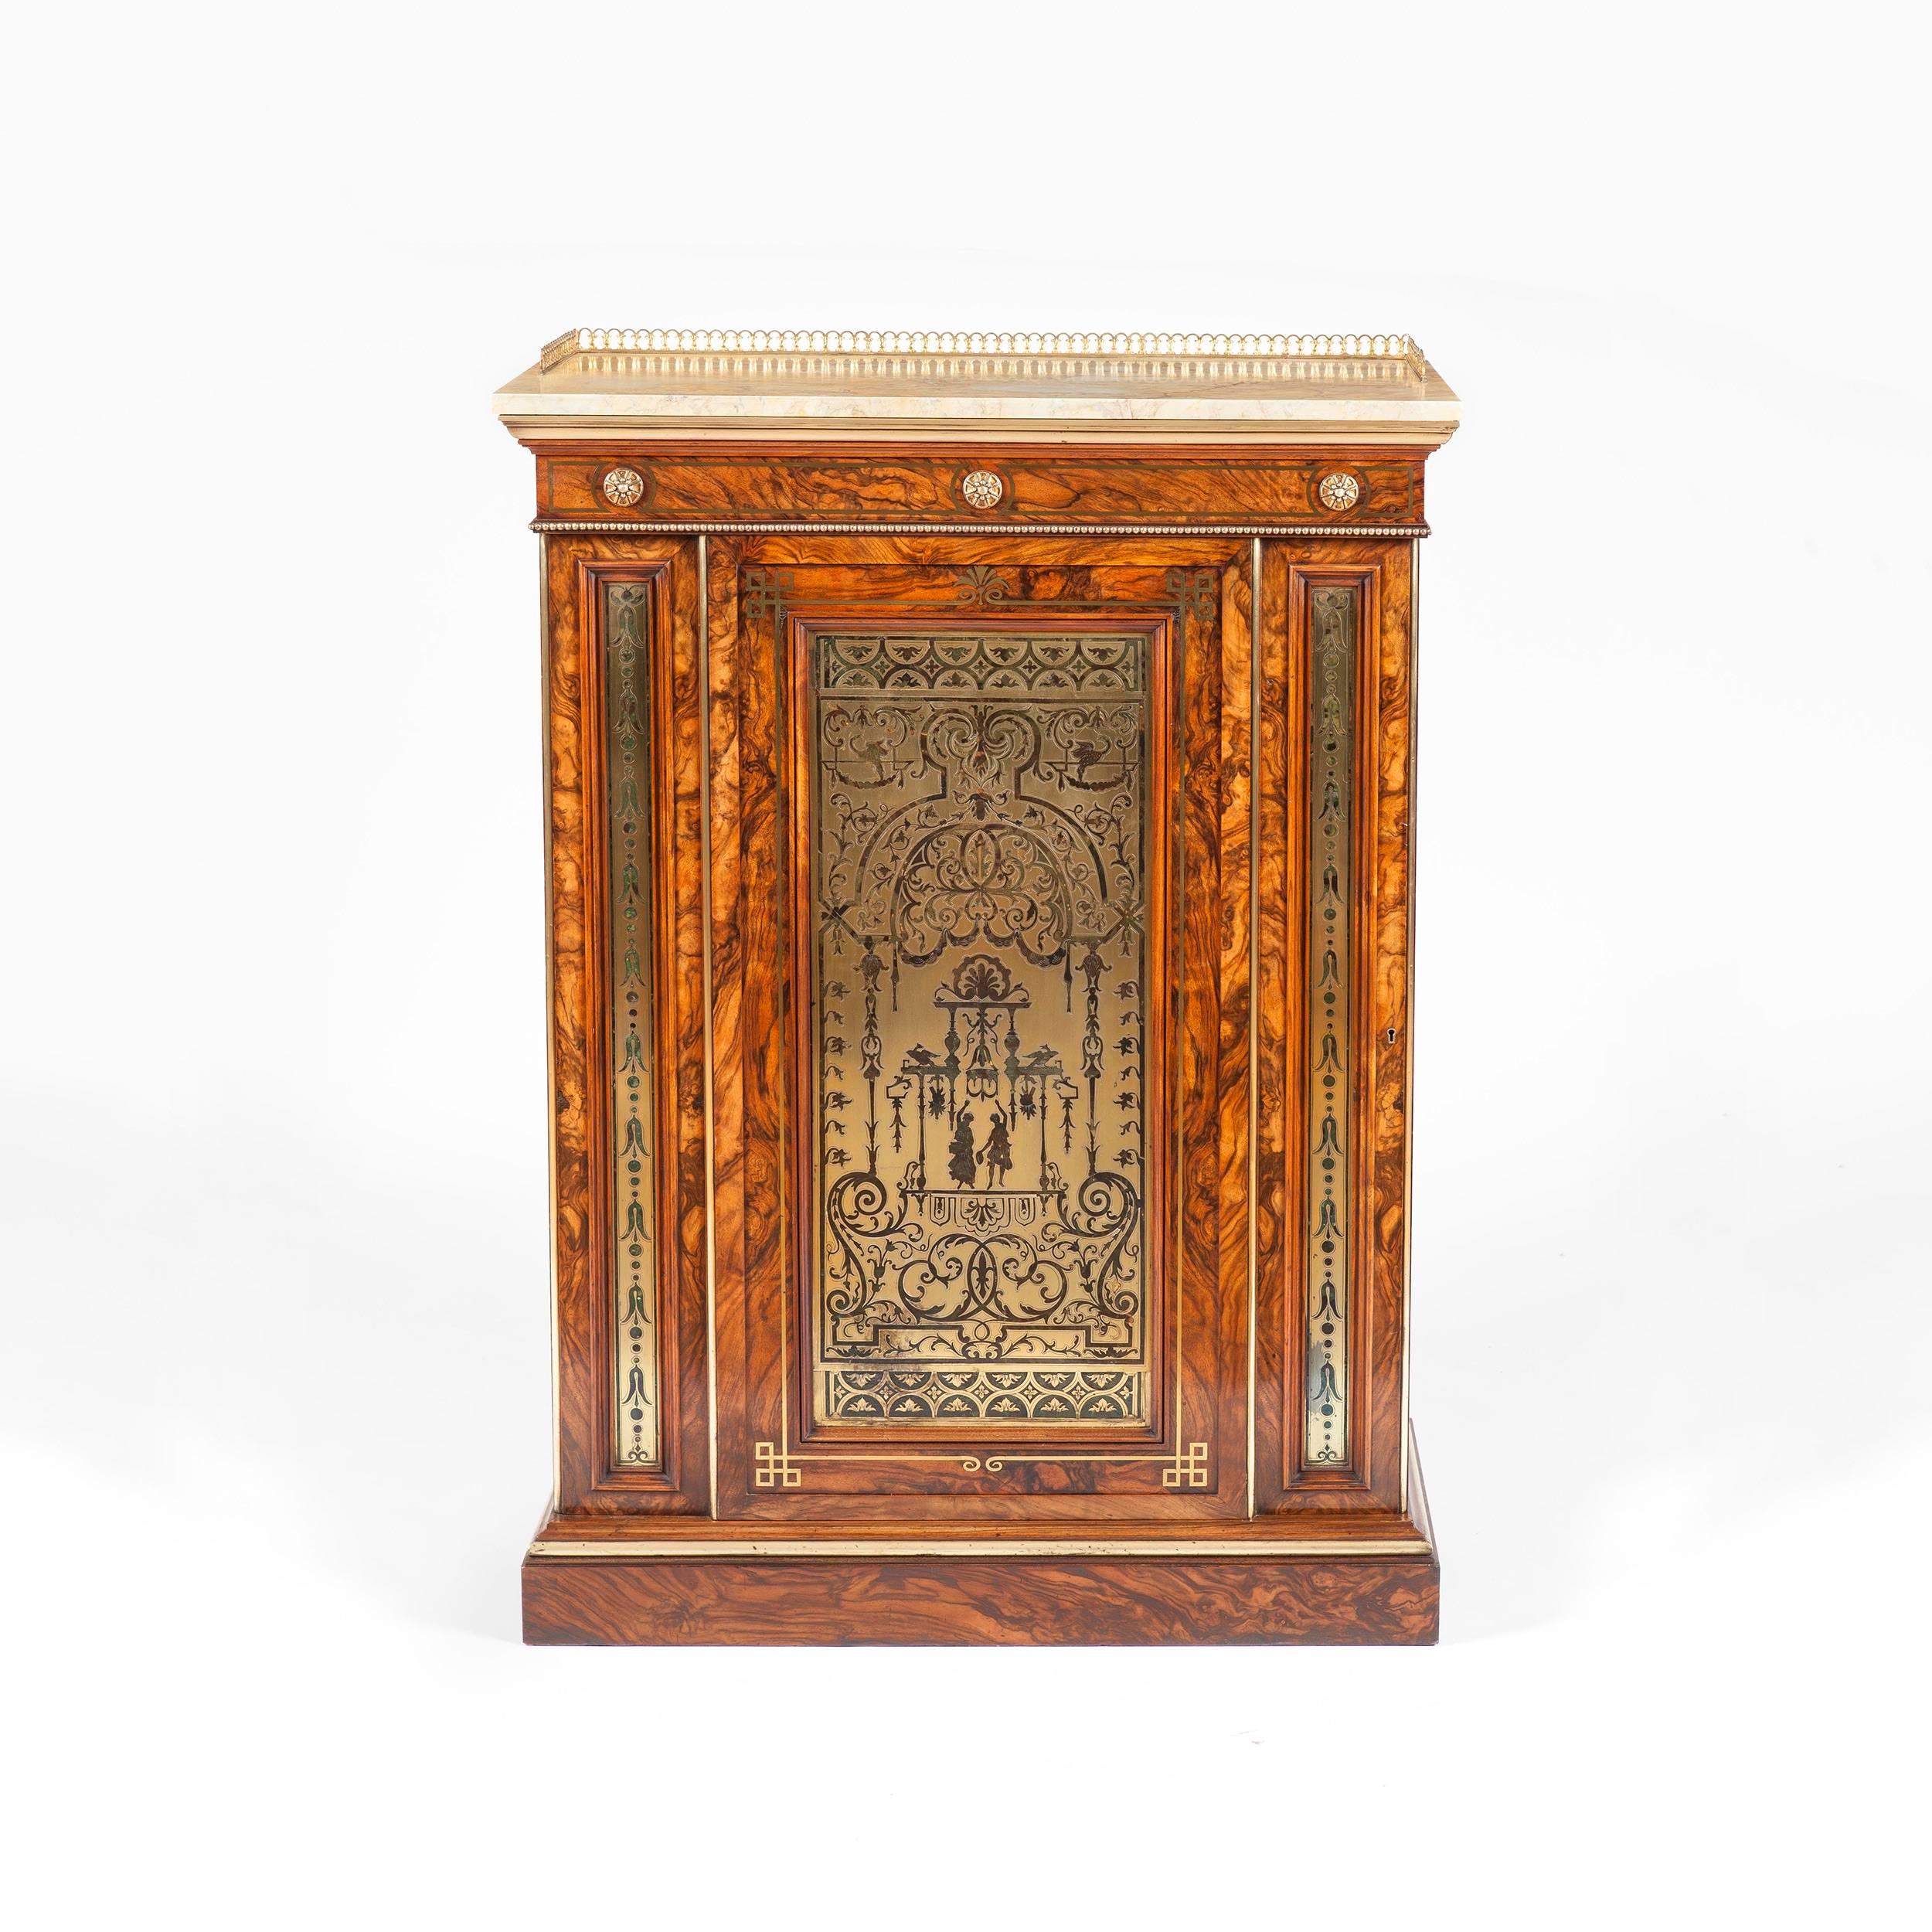 Cabinet William IV attribué à Townes et Emmanuel

Construite en bois d'olivier à grain fort et ornée d'incrustations en laiton doré et d'un panneau en laiton gravé et gravé ; s'élevant sur une base en socle, la porte unique verrouillable comporte un